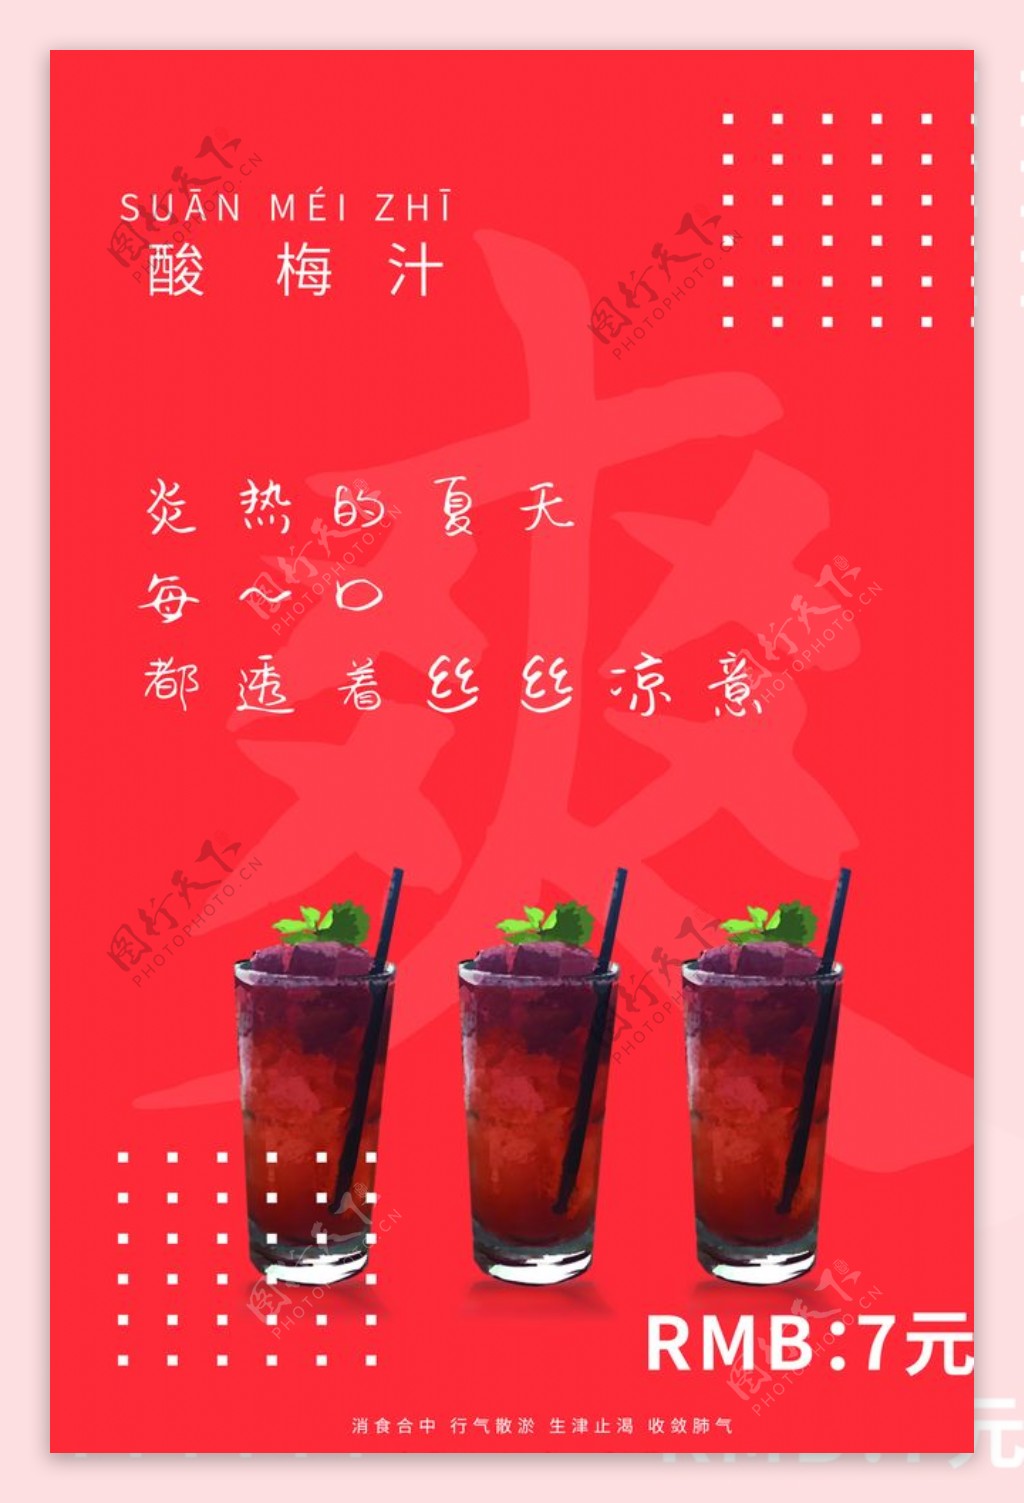 酸梅汁果汁活动促销宣传海报素材